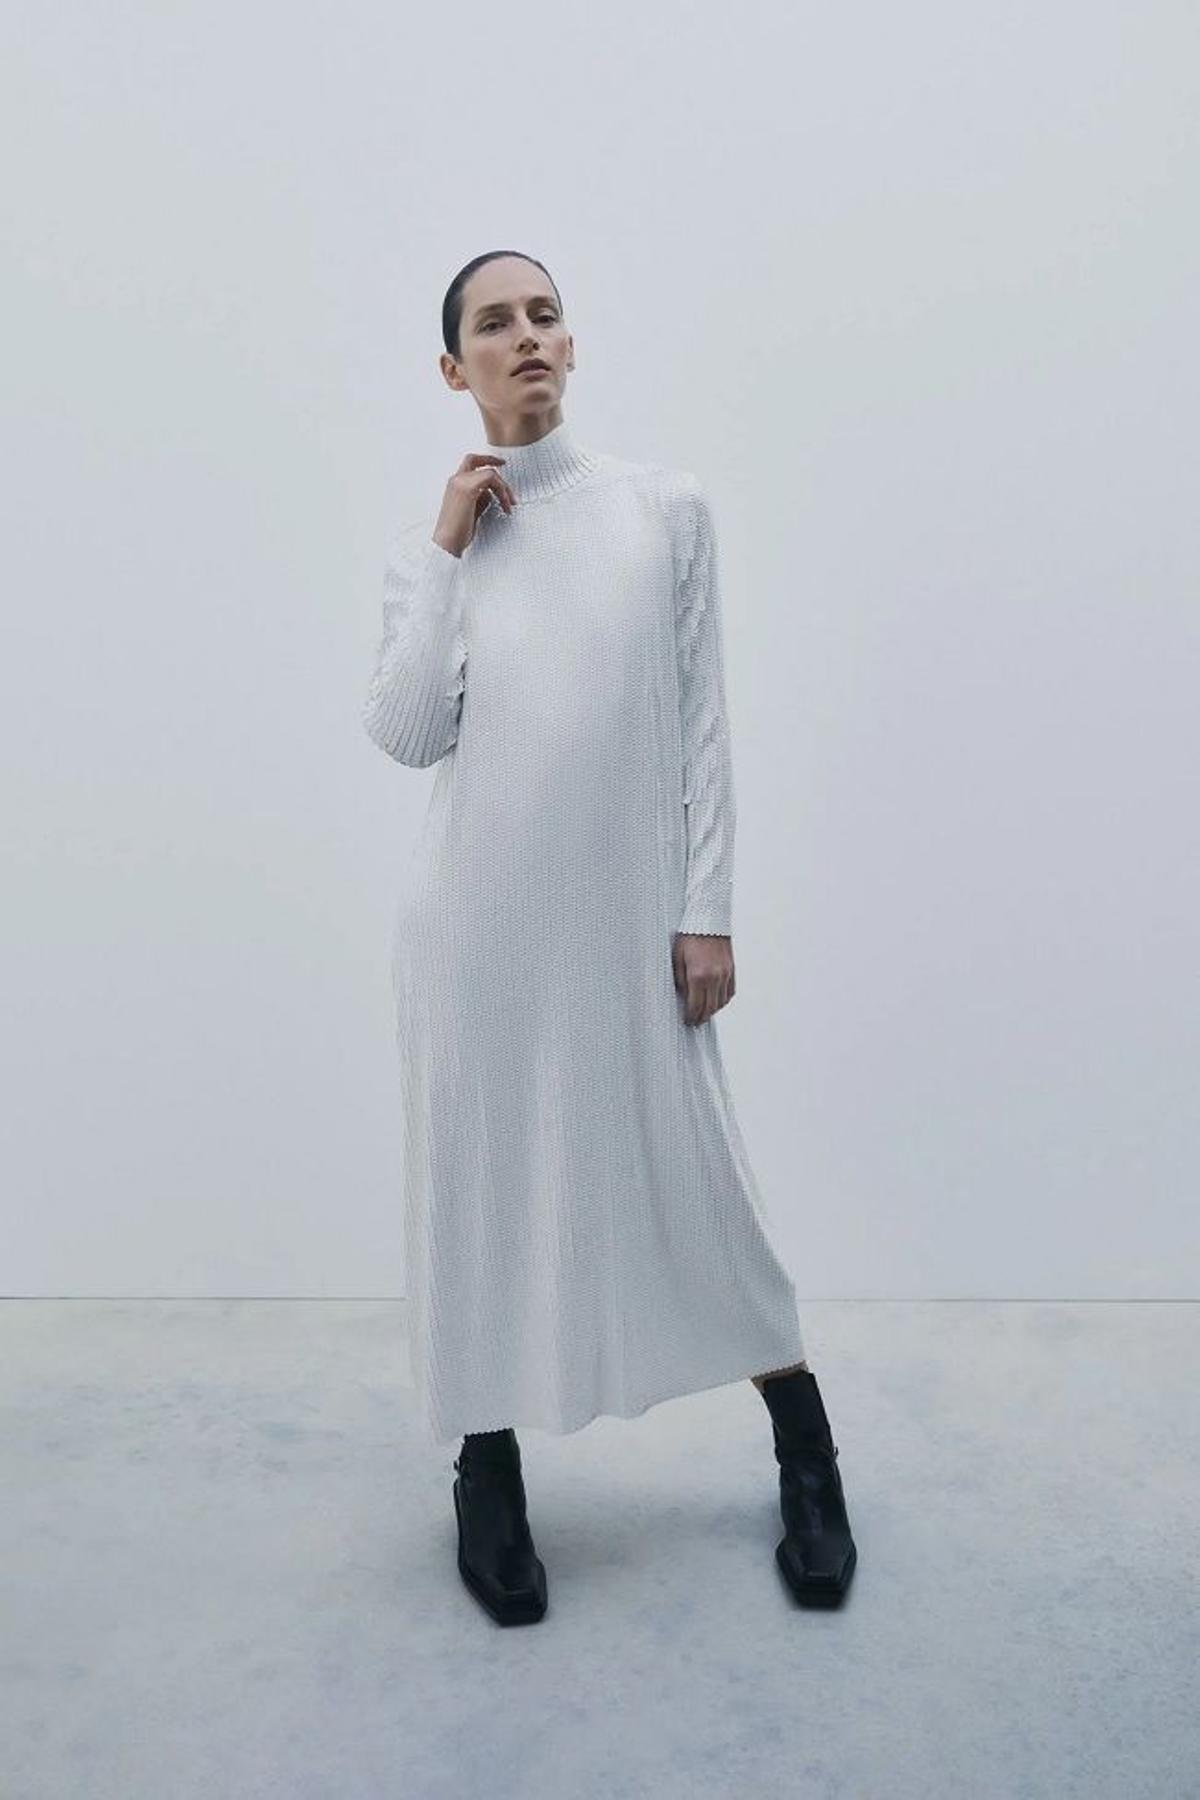 Este increíble vestido blanco lentejuelas de Zara es ideal para look novia de invierno - Woman